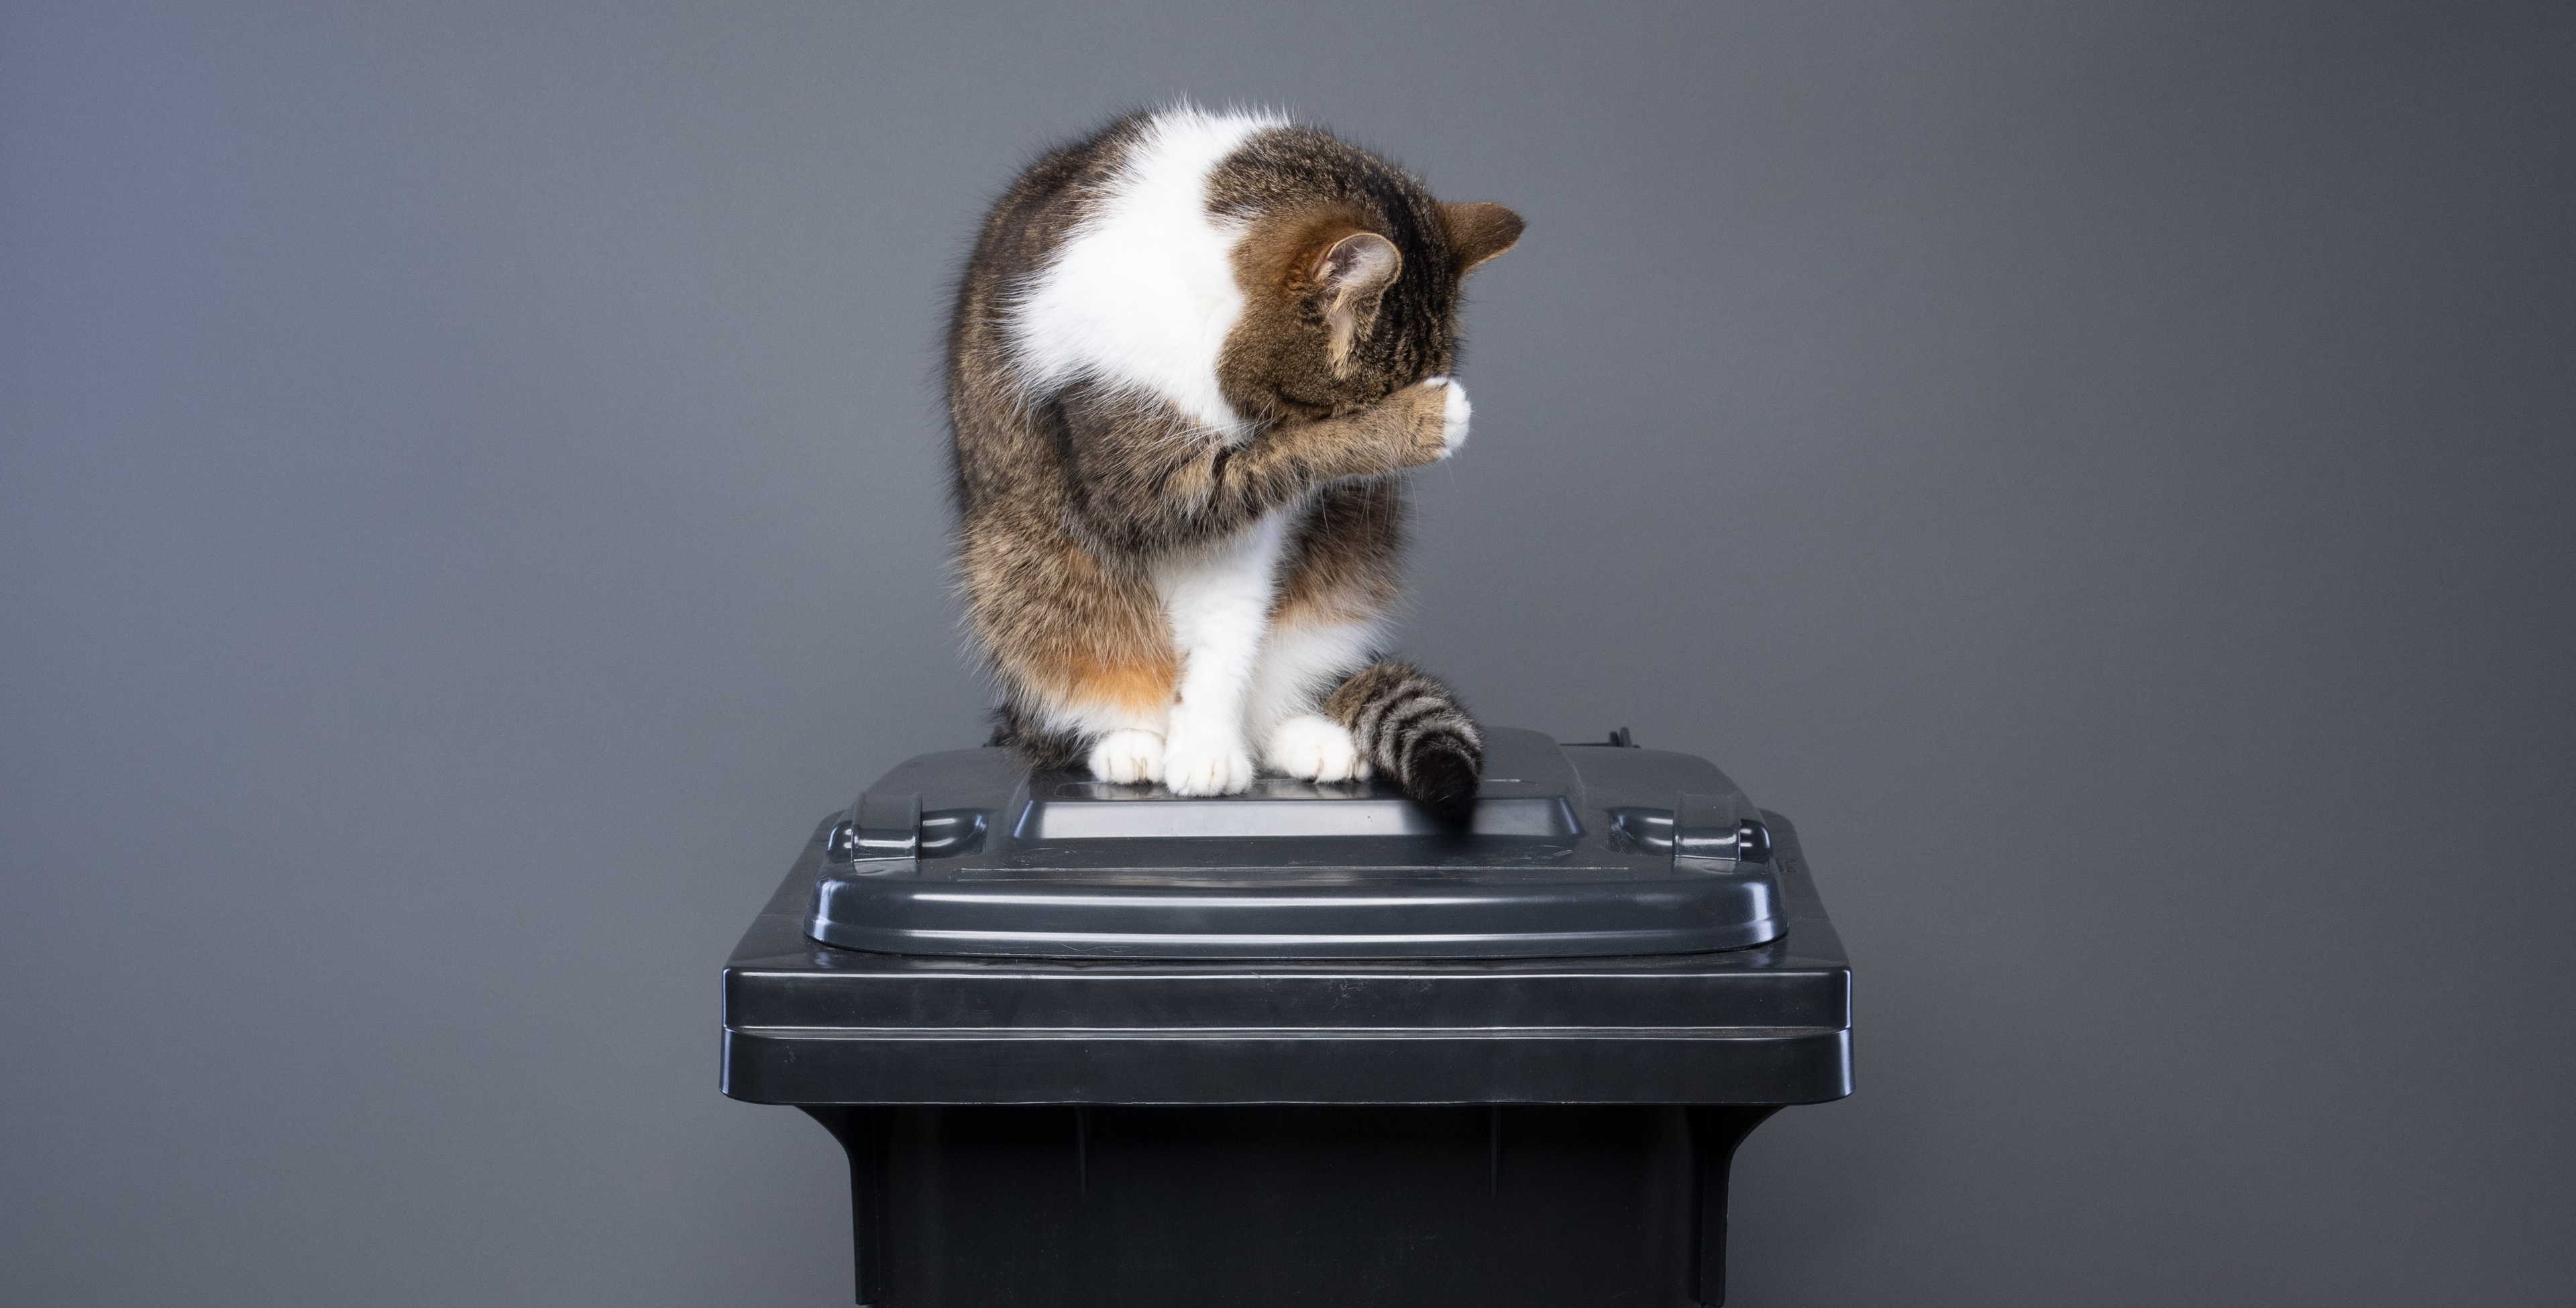 Réduire drastiquement les déchets liés à la litière pour chat - Un sondage montre que la majorité des Allemands sont favorables à l'utilisation de litières végétales pour chats